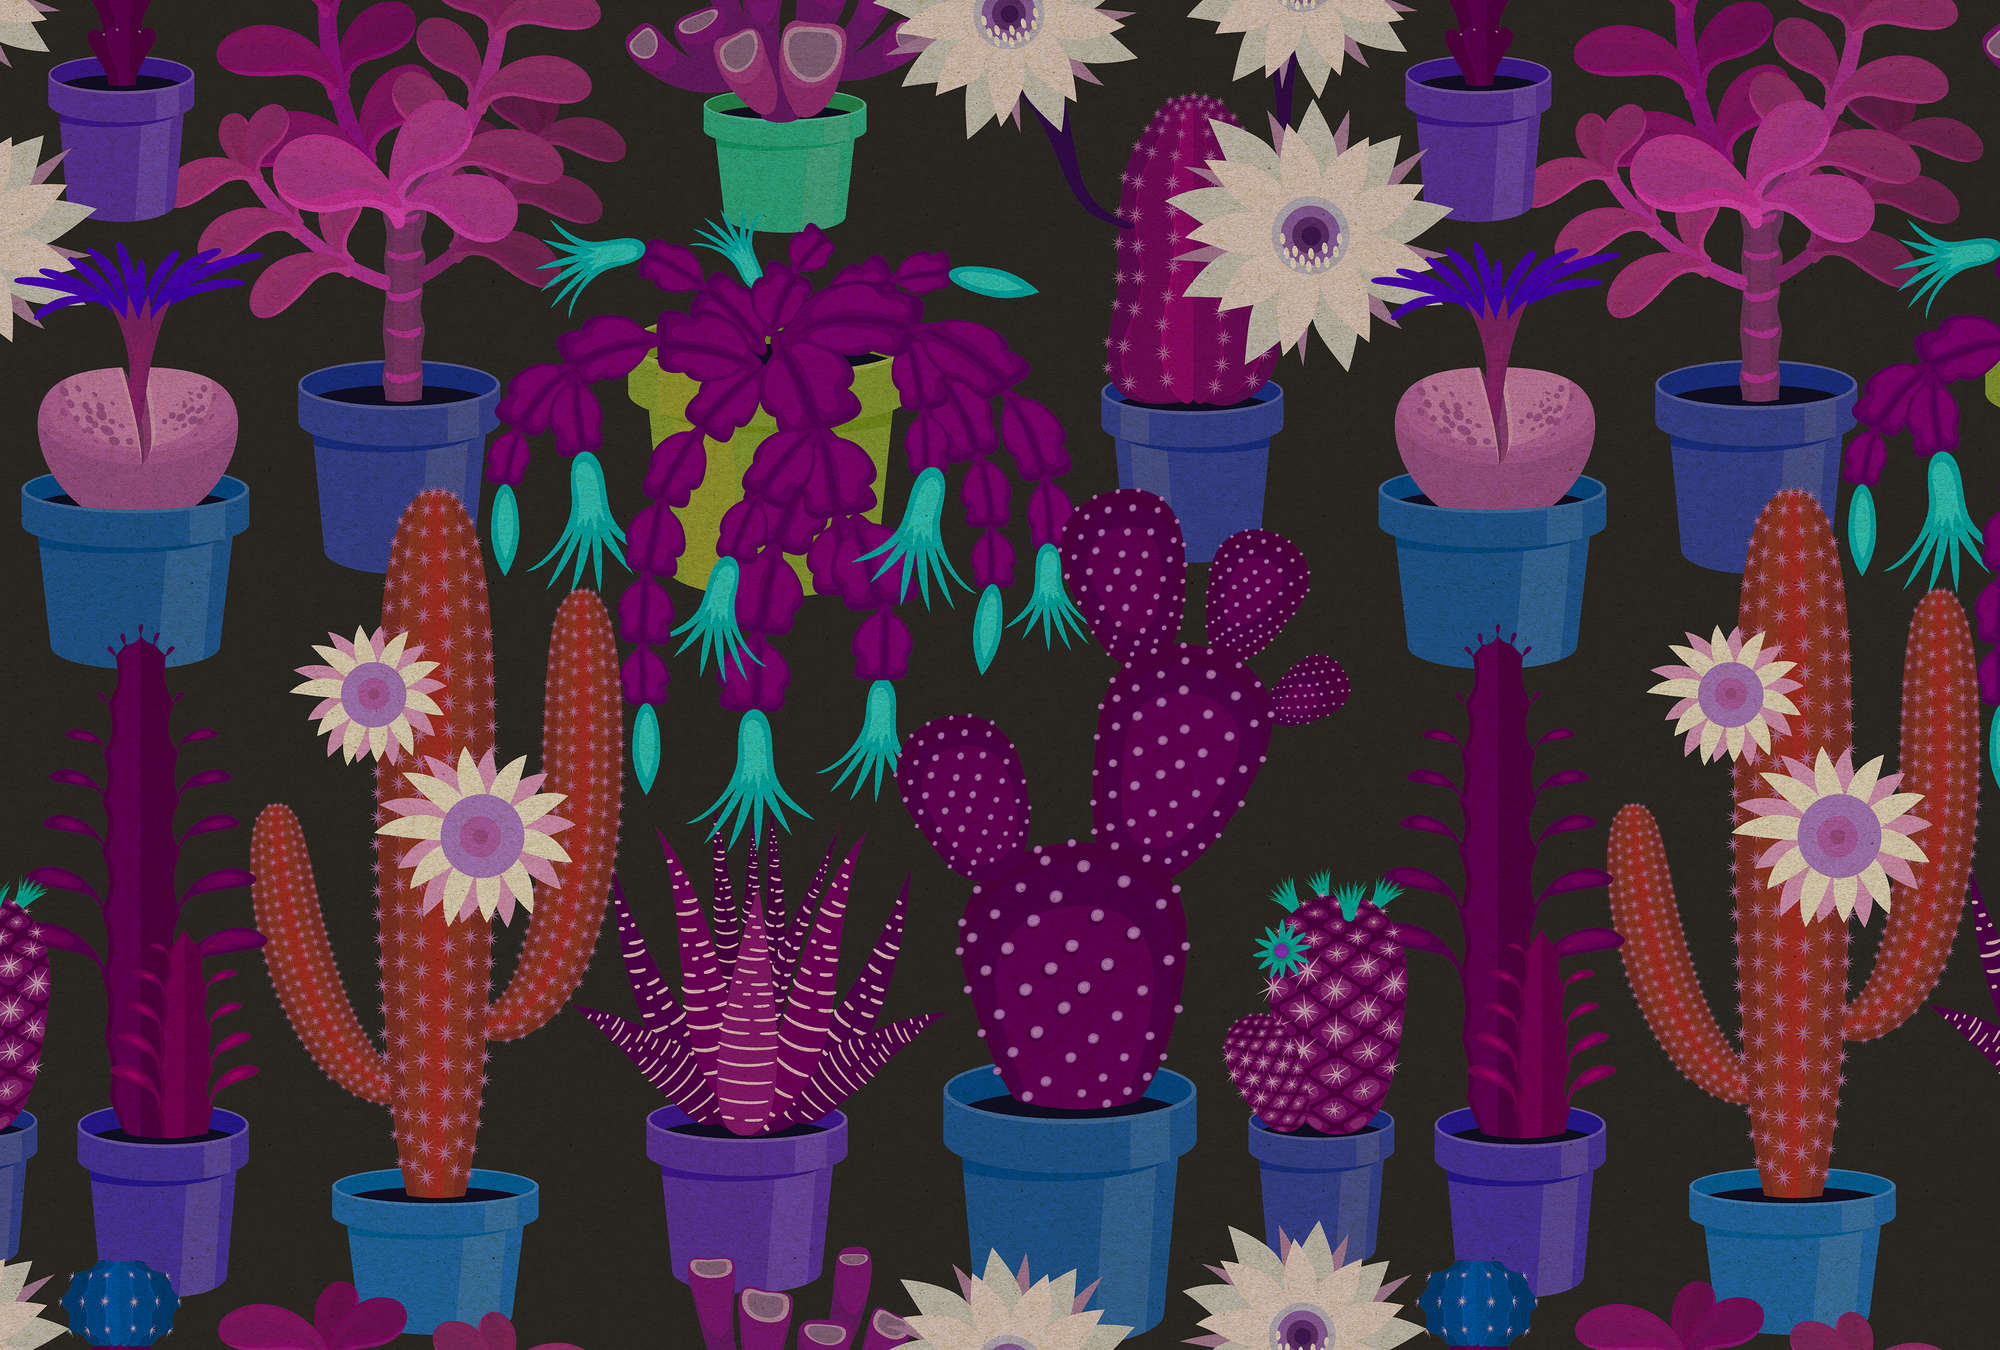             Cactus garden 1 - Fototapete in Pappe Struktur mit bunten Kakteen im Comic Stil – Blau, Orange | Premium Glattvlies
        